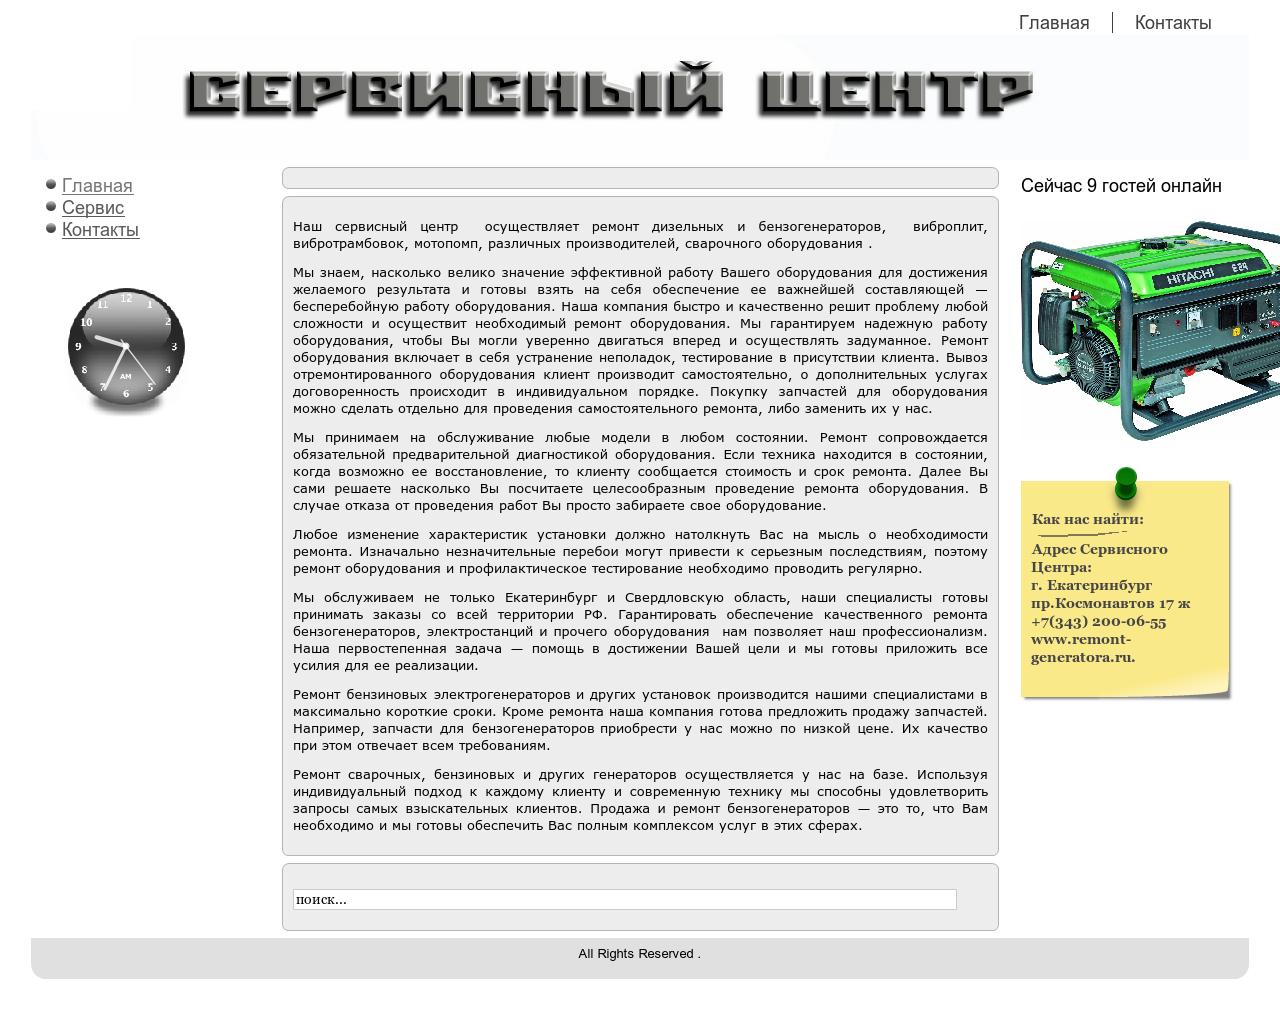 Изображение сайта remont-generatora.ru в разрешении 1280x1024